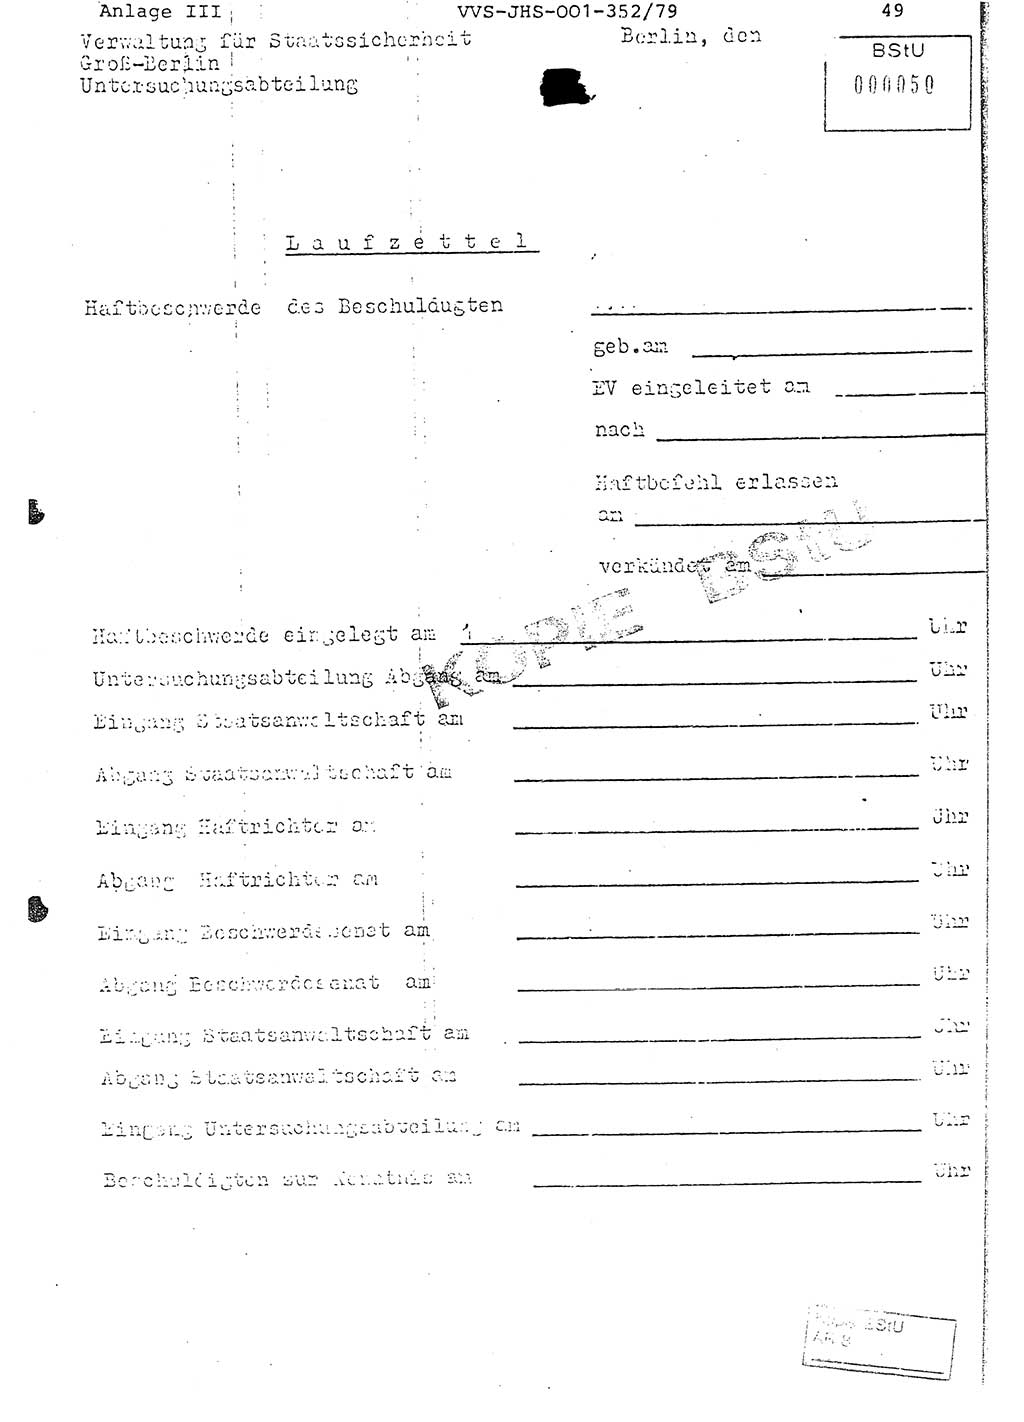 Diplomarbeit Hauptmann Peter Wittum (BV Bln. Abt. HA Ⅸ), Ministerium für Staatssicherheit (MfS) [Deutsche Demokratische Republik (DDR)], Juristische Hochschule (JHS), Vertrauliche Verschlußsache (VVS) o001-352/79, Potsdam 1979, Seite 49 (Dipl.-Arb. MfS DDR JHS VVS o001-352/79 1979, S. 49)